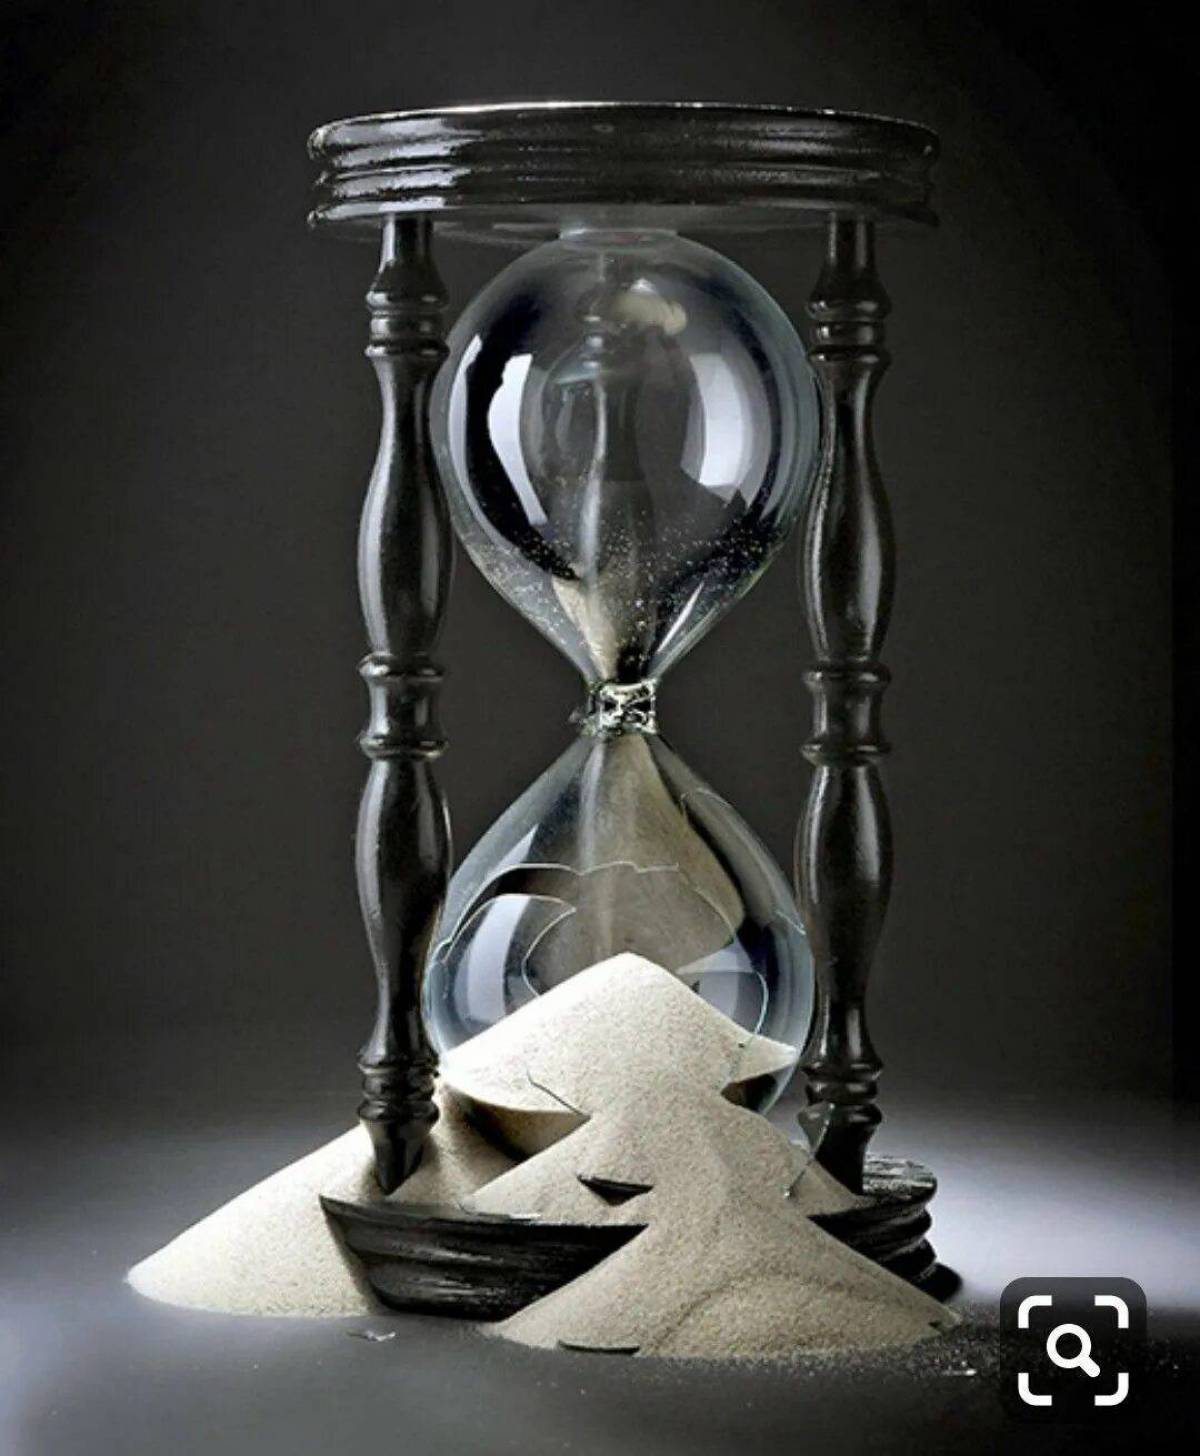 Песочные часы лучшие. Песочные часы Джона Янча. Песочные часы дизайнерские. Старинные песочные часы. Песочные часы арт.